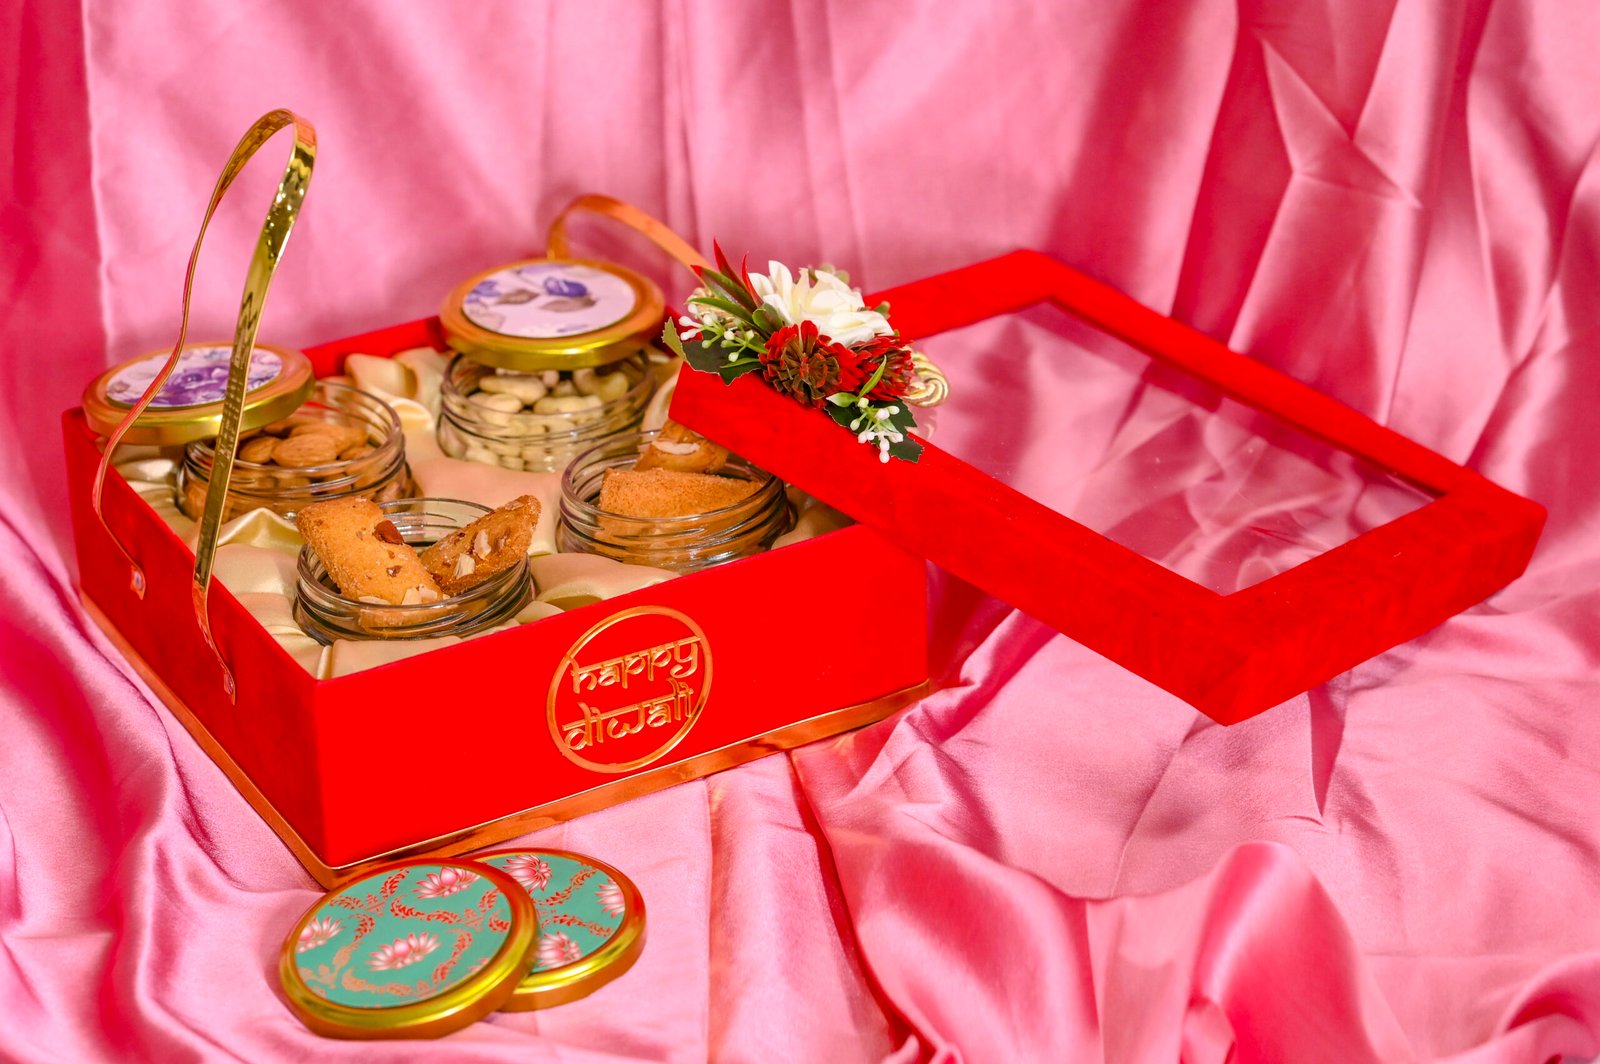 Shabby Chic Gift box